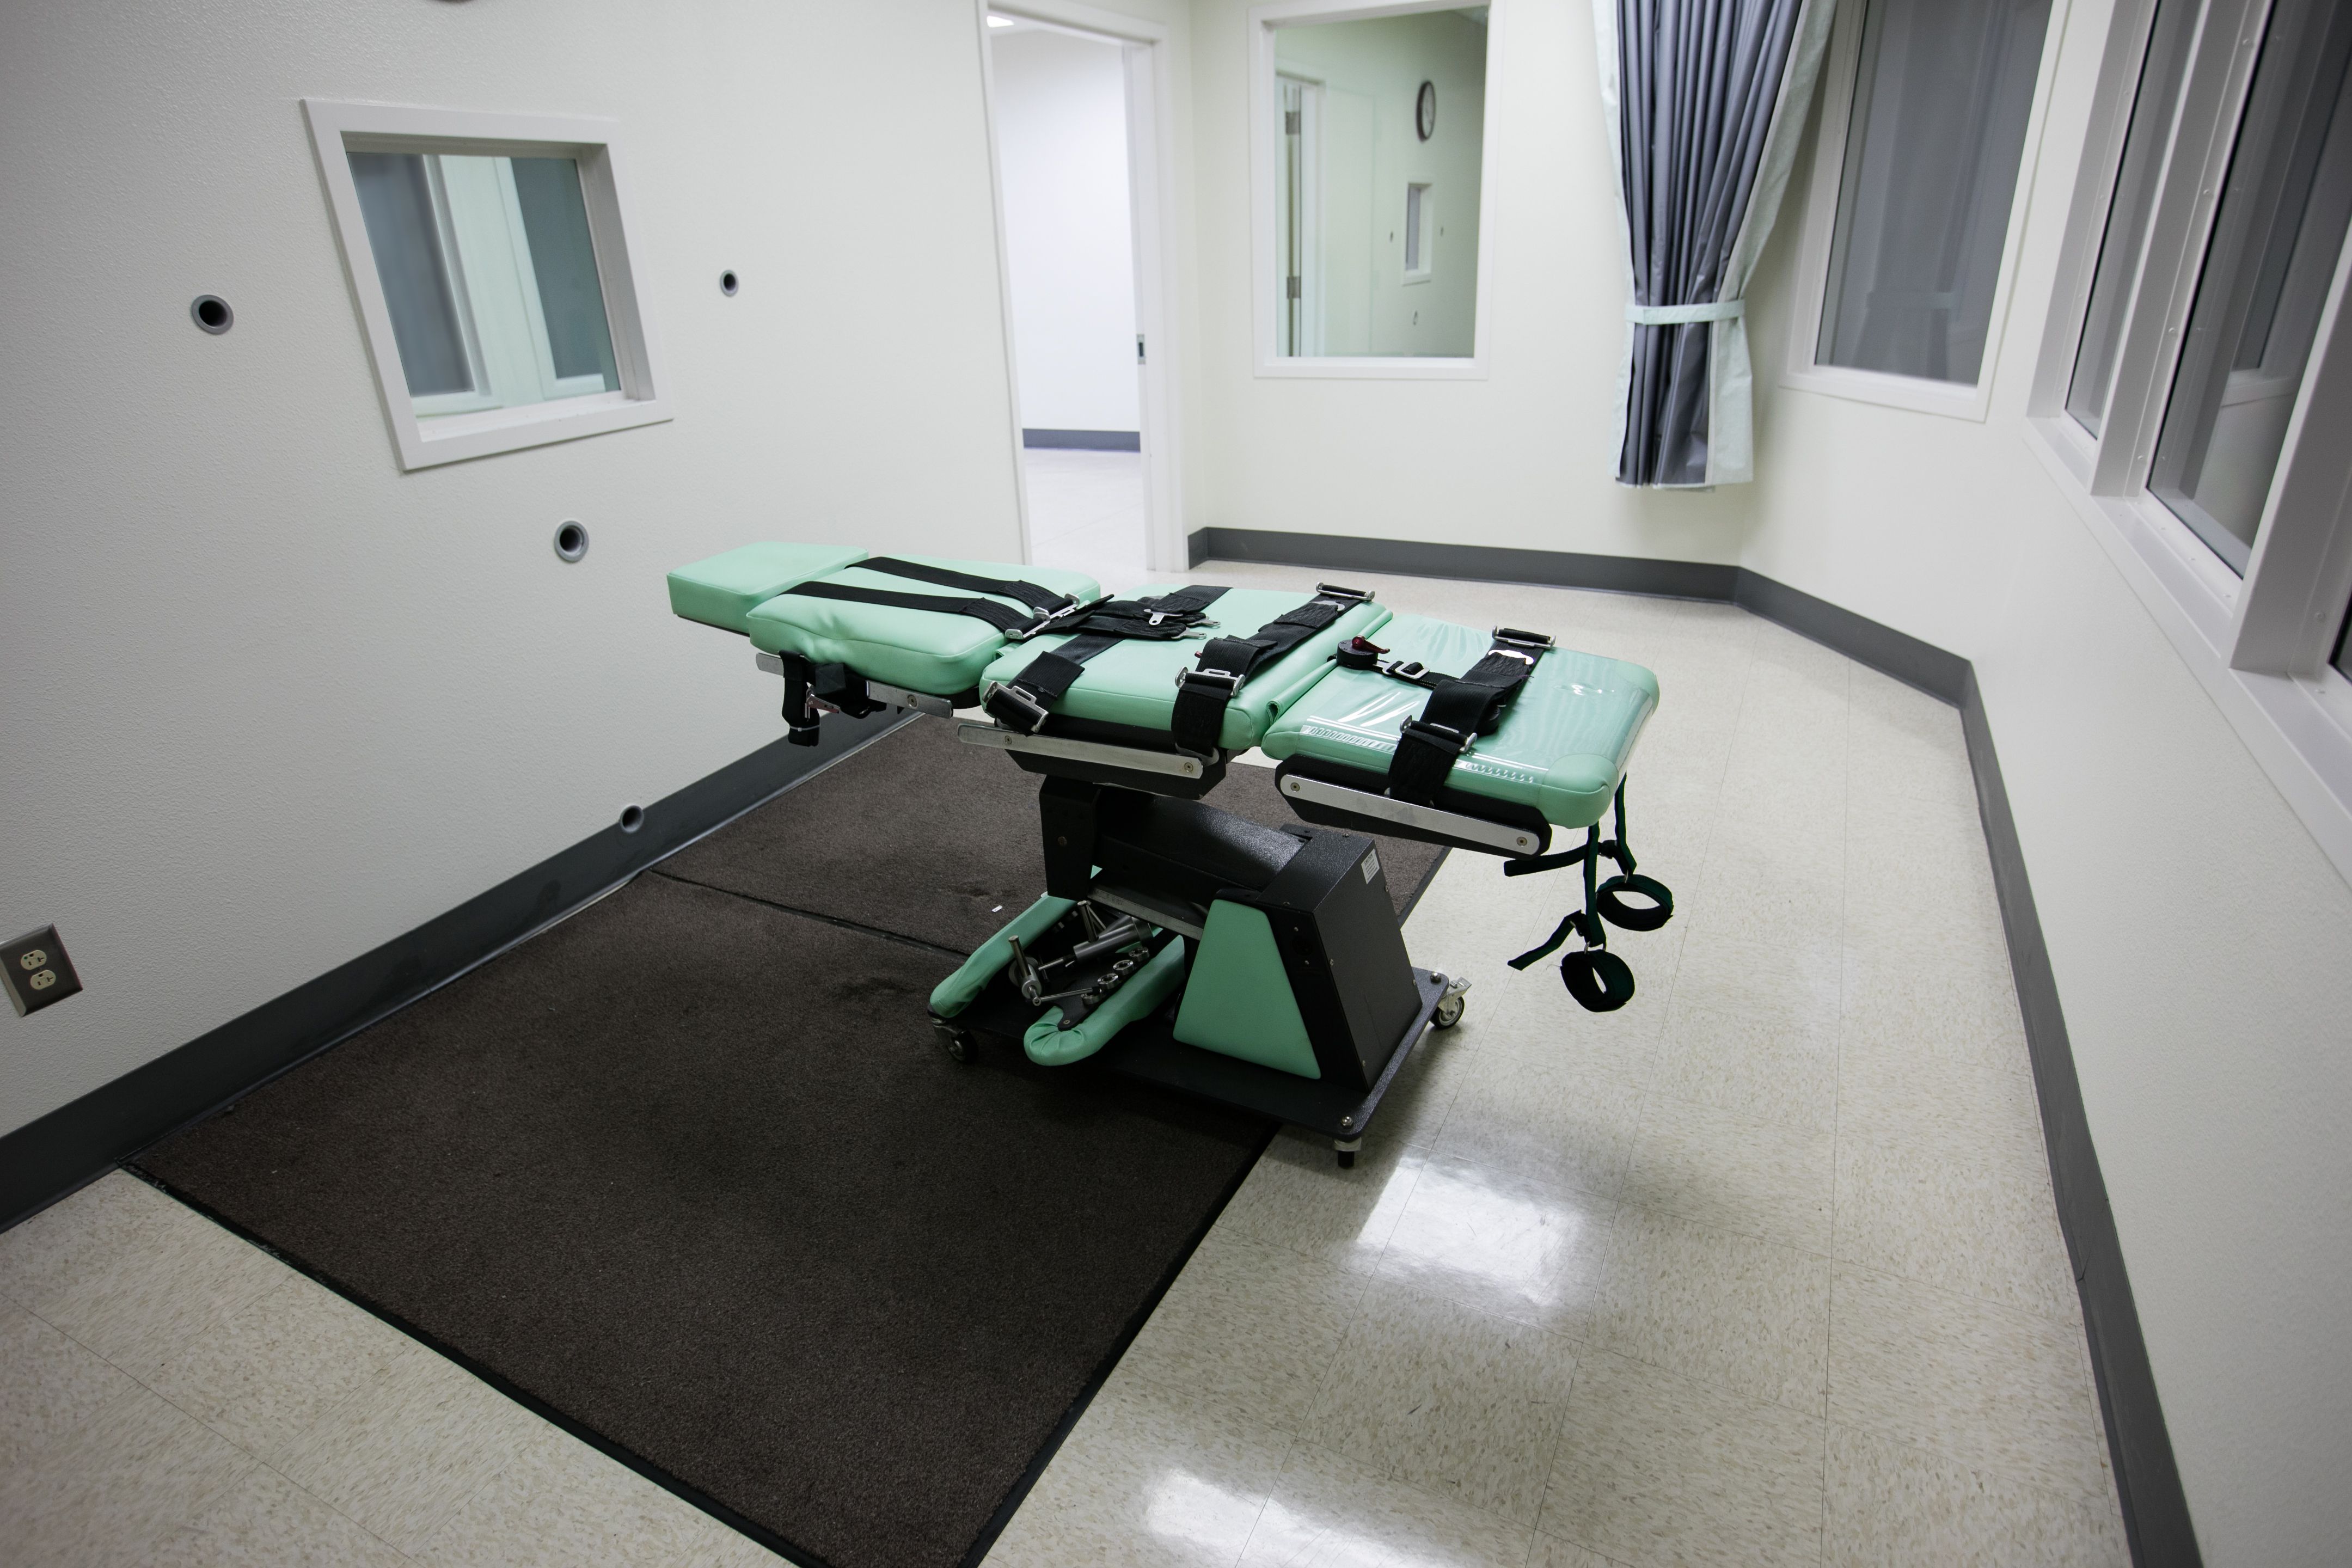 Kalifornien schließt Todeszellen - Der Streit um die Death Row